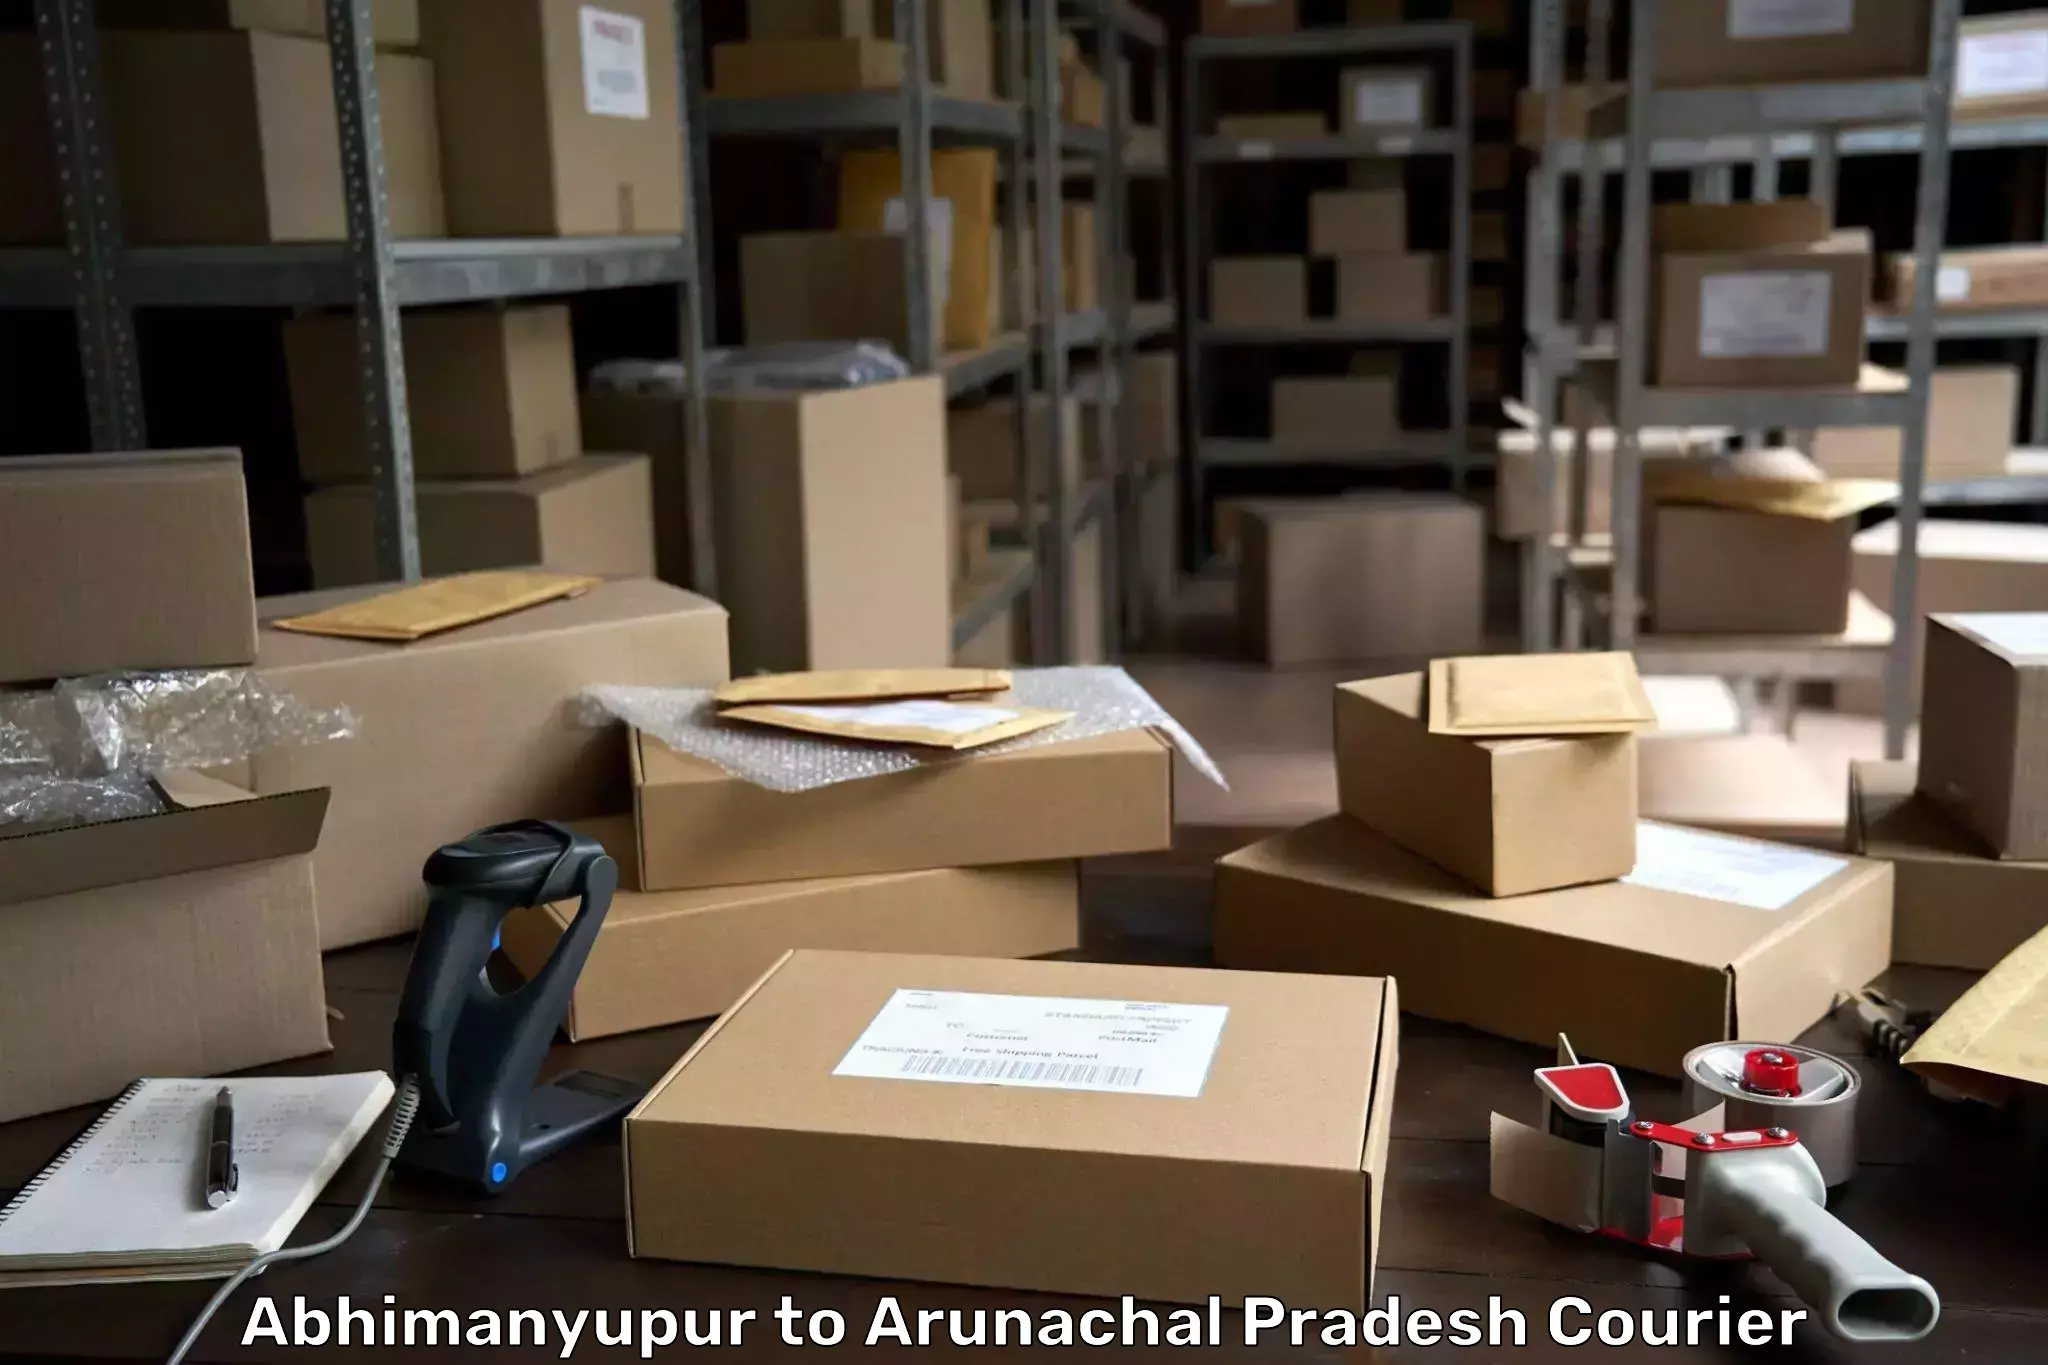 Business shipping needs Abhimanyupur to Arunachal Pradesh